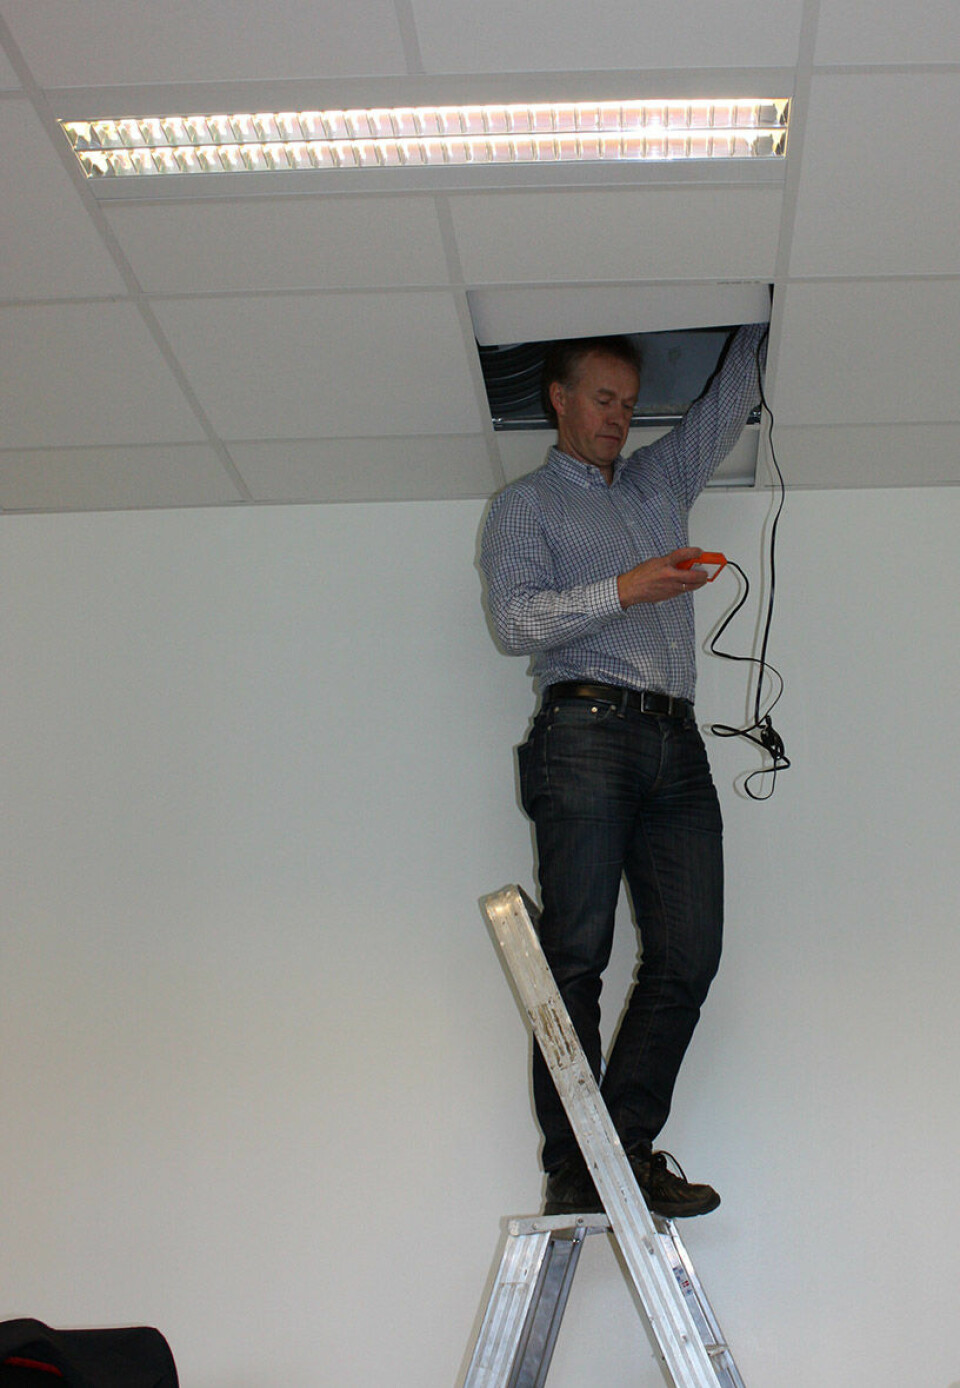 Ikke alt lar seg gjøre via fjernkontroll. Prosjektkoordinator Mads Mysen fra Sintef må stikke hodet opp i taket for å programmere spjeldene som kontrollerer ventilasjonen i klasserommet. (Foto: NILU)